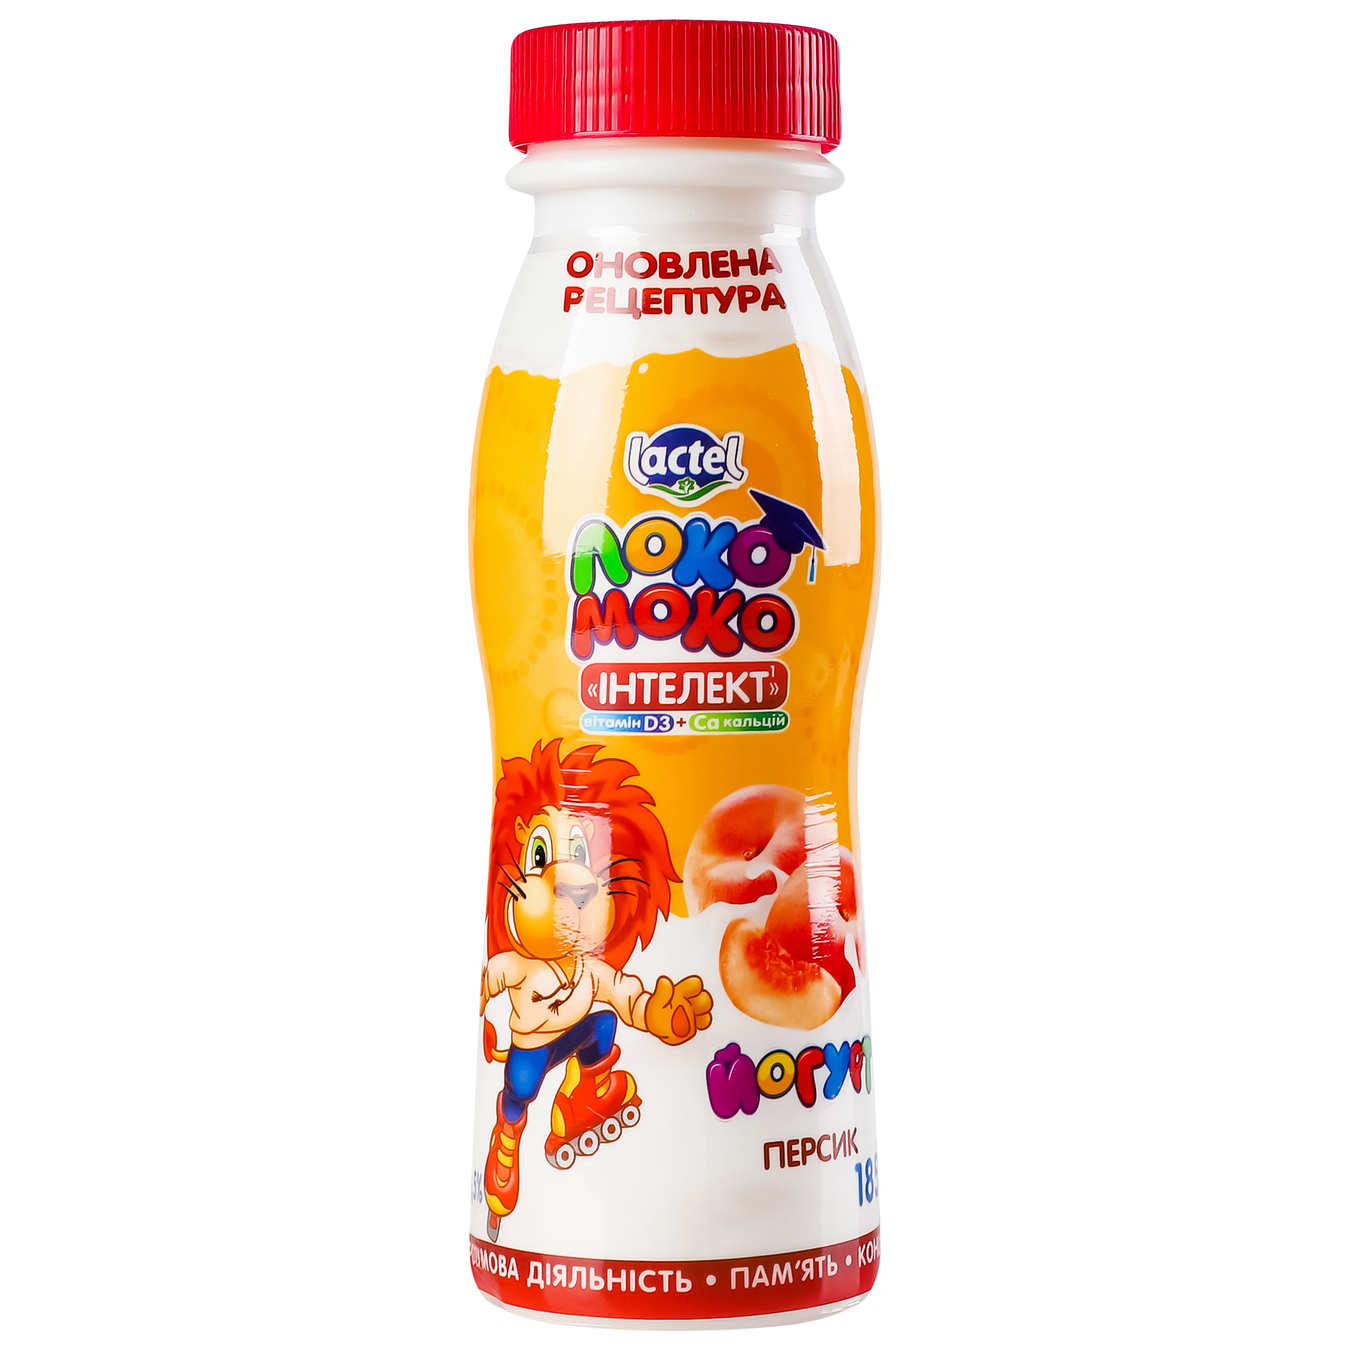 Йогурт Локо Моко с наполнителем персик с кальцием Омега 3 и витамином D3 1,5%